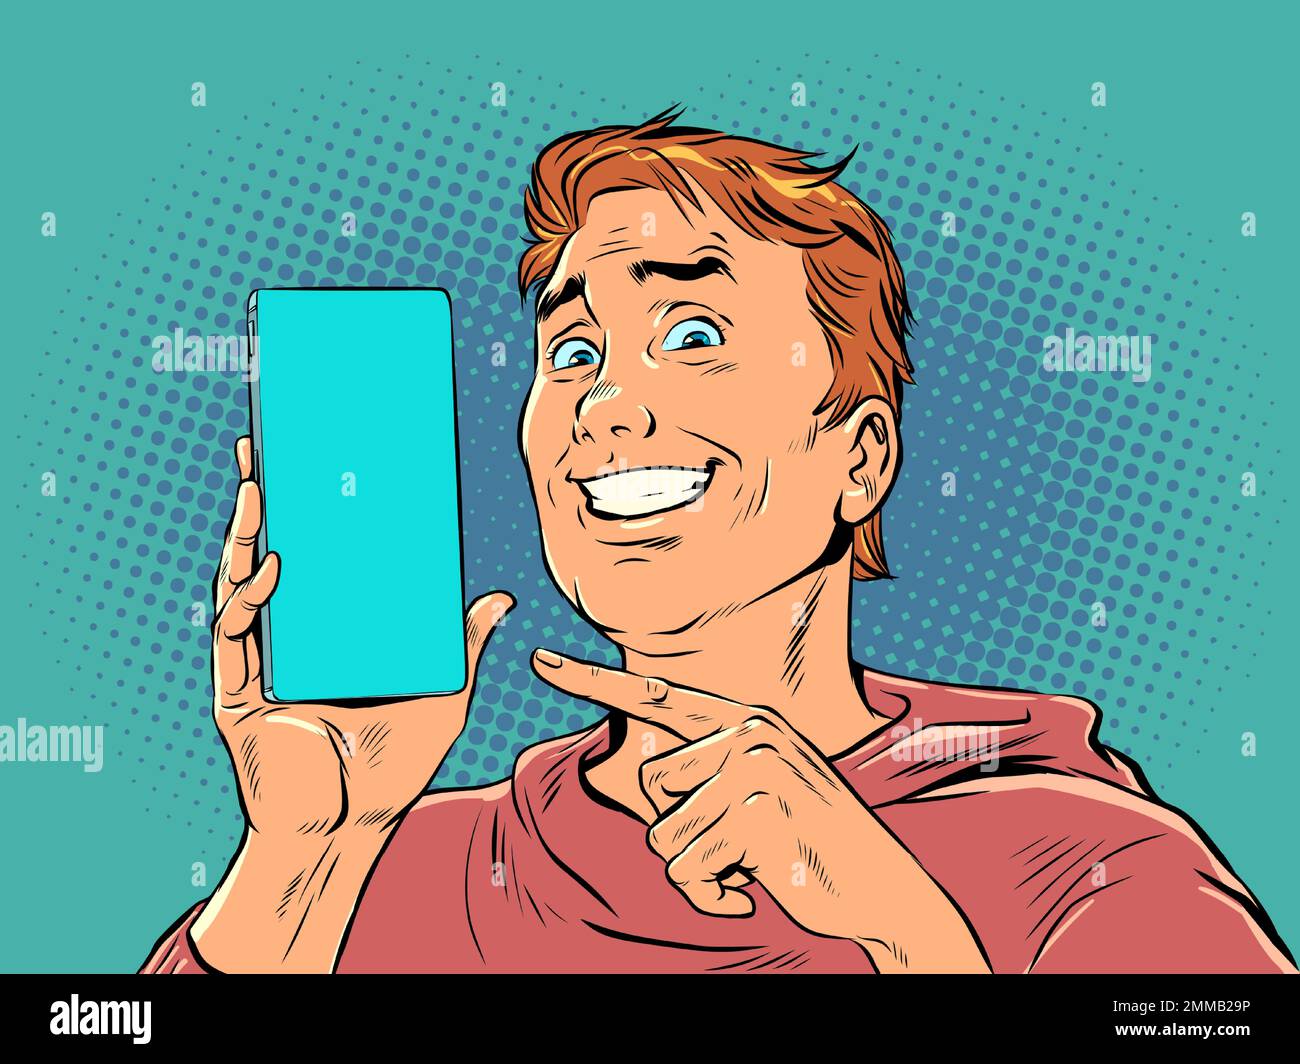 Un uomo con i capelli rossi sorride e punta al telefono. Dimostrazione del prodotto o offerta su smartphone. La gioia di un acquisto perfetto. Pop Art retro Illustrazione Vettoriale